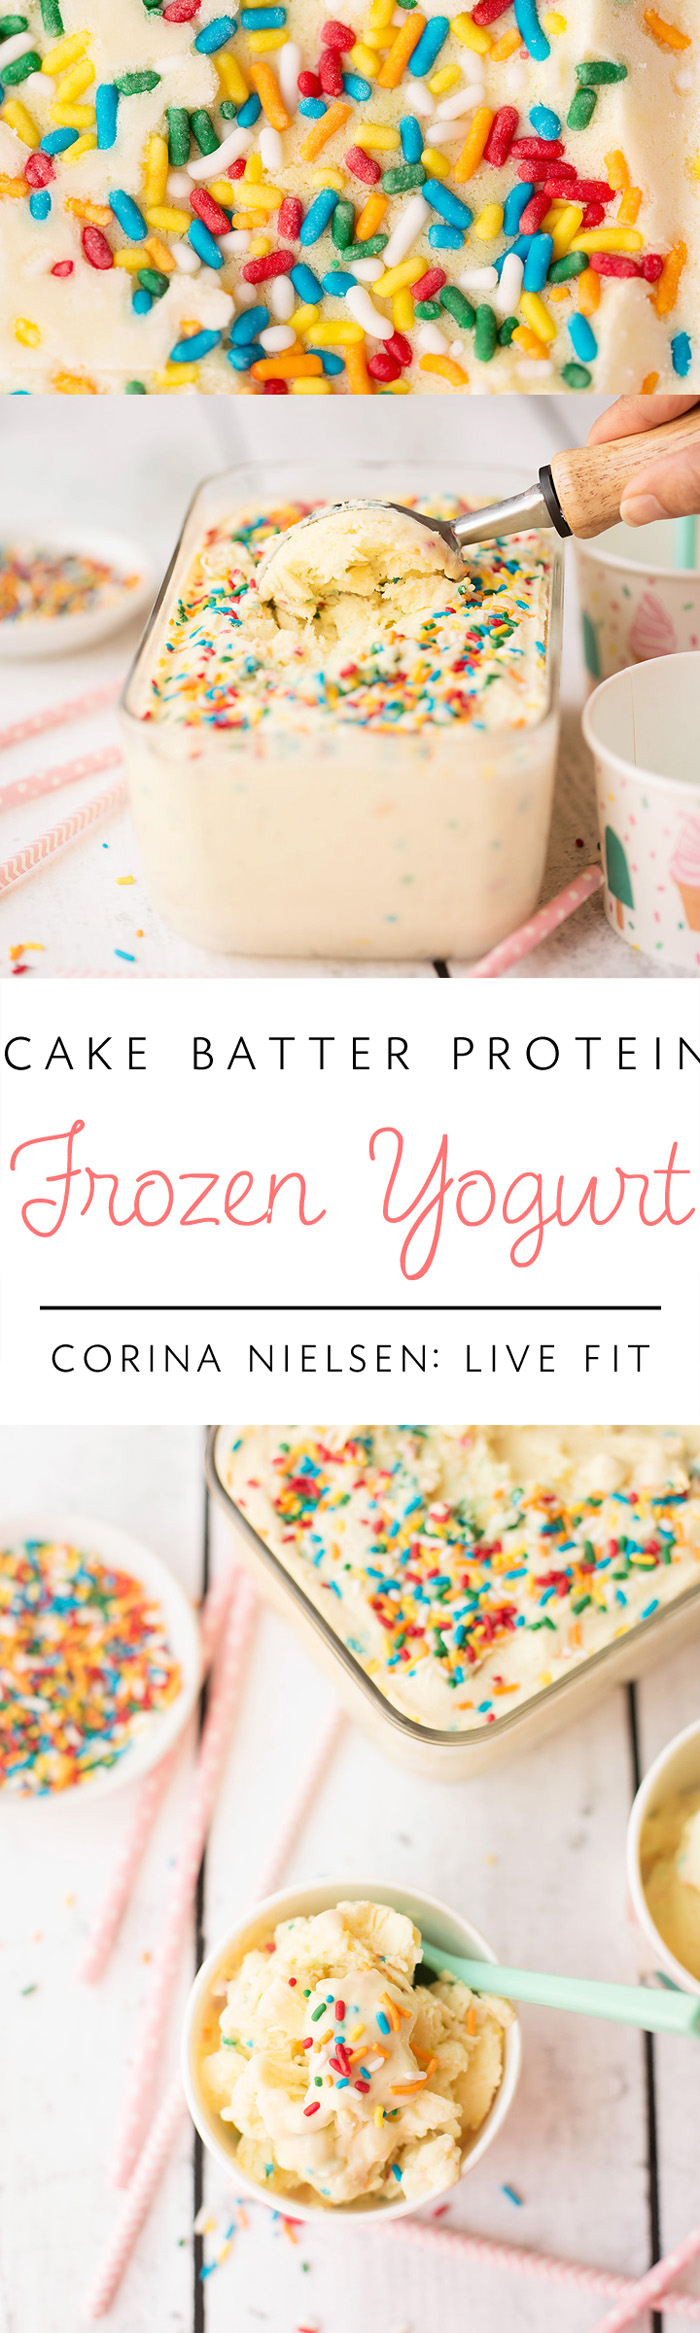 Cake Batter Protein Frozen Yogurt